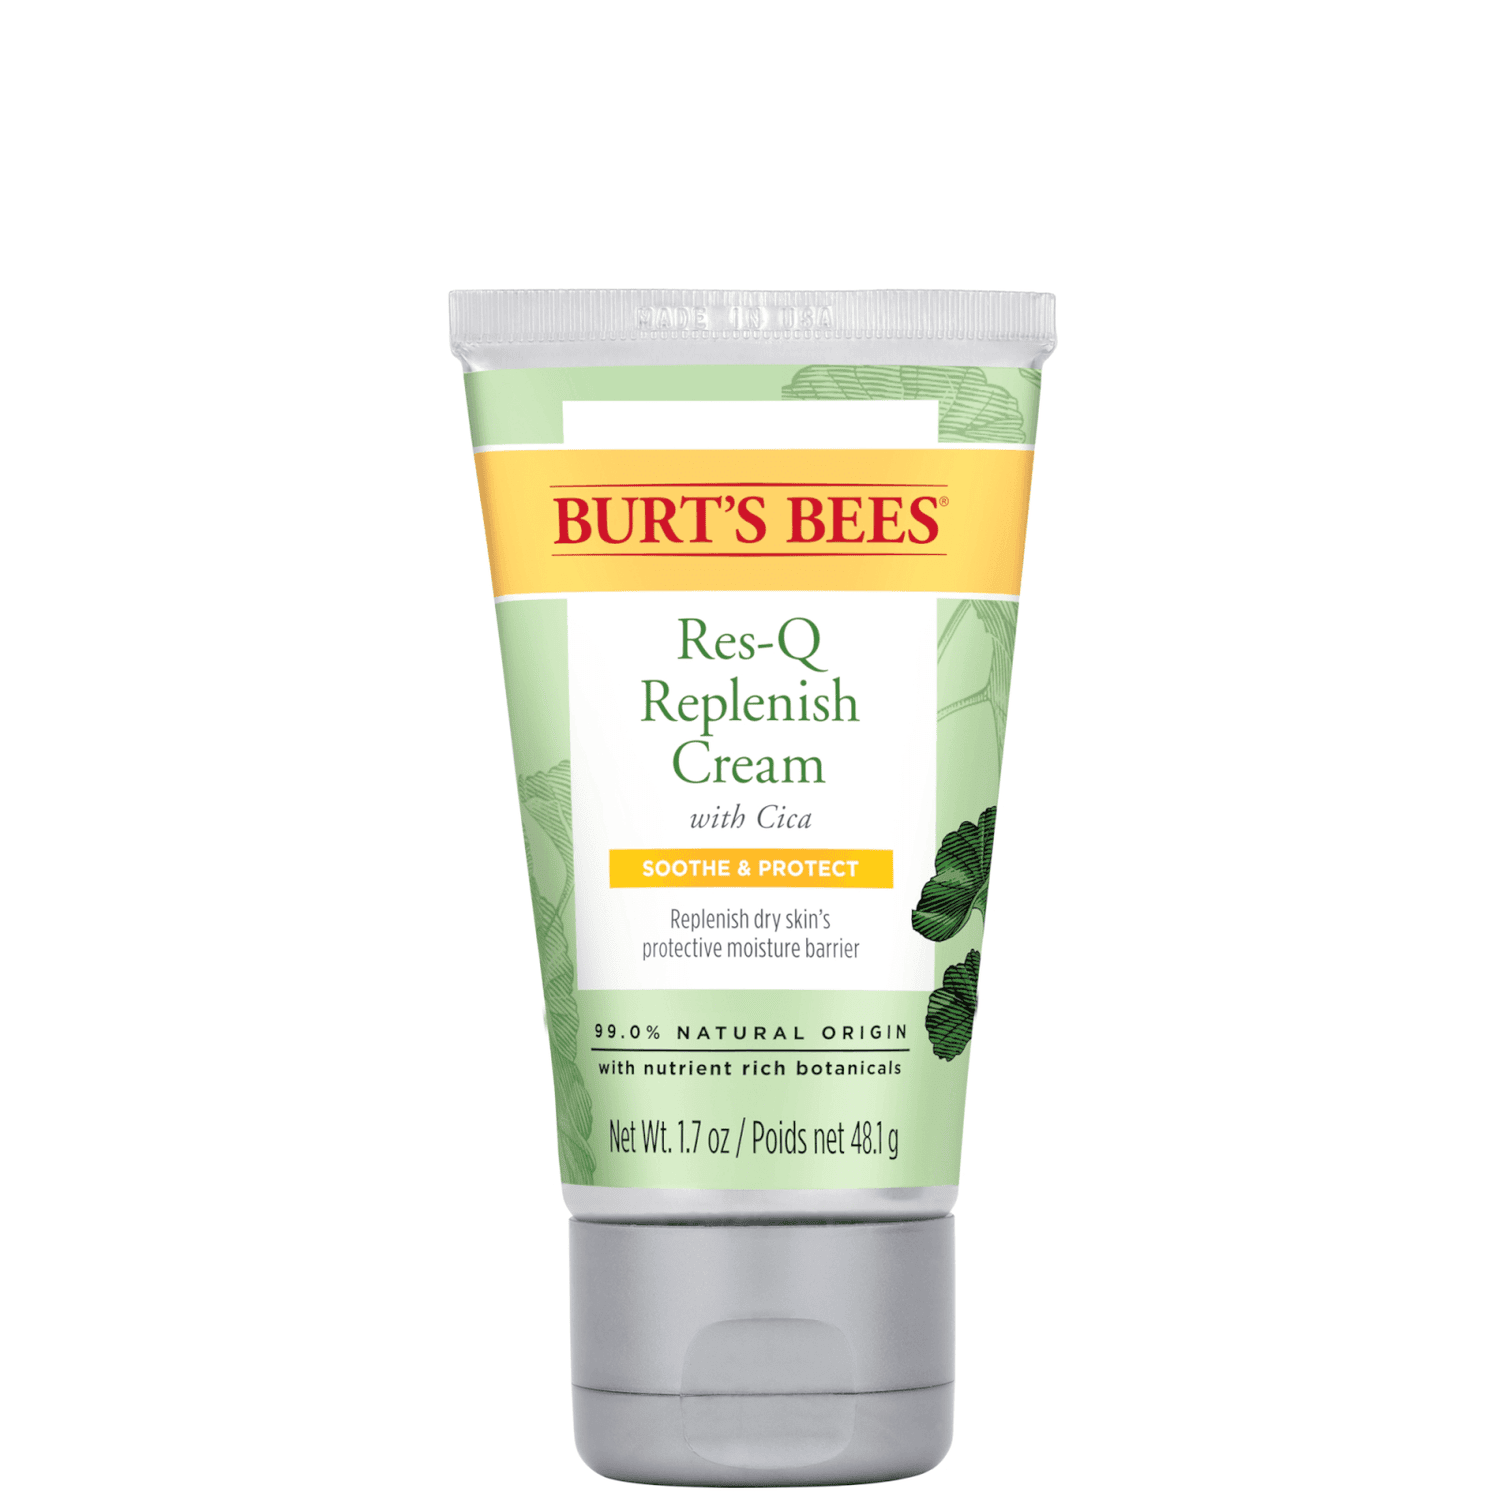 Burt's Bees 99% Natural Origin Res-Q Cream with Cica 50g